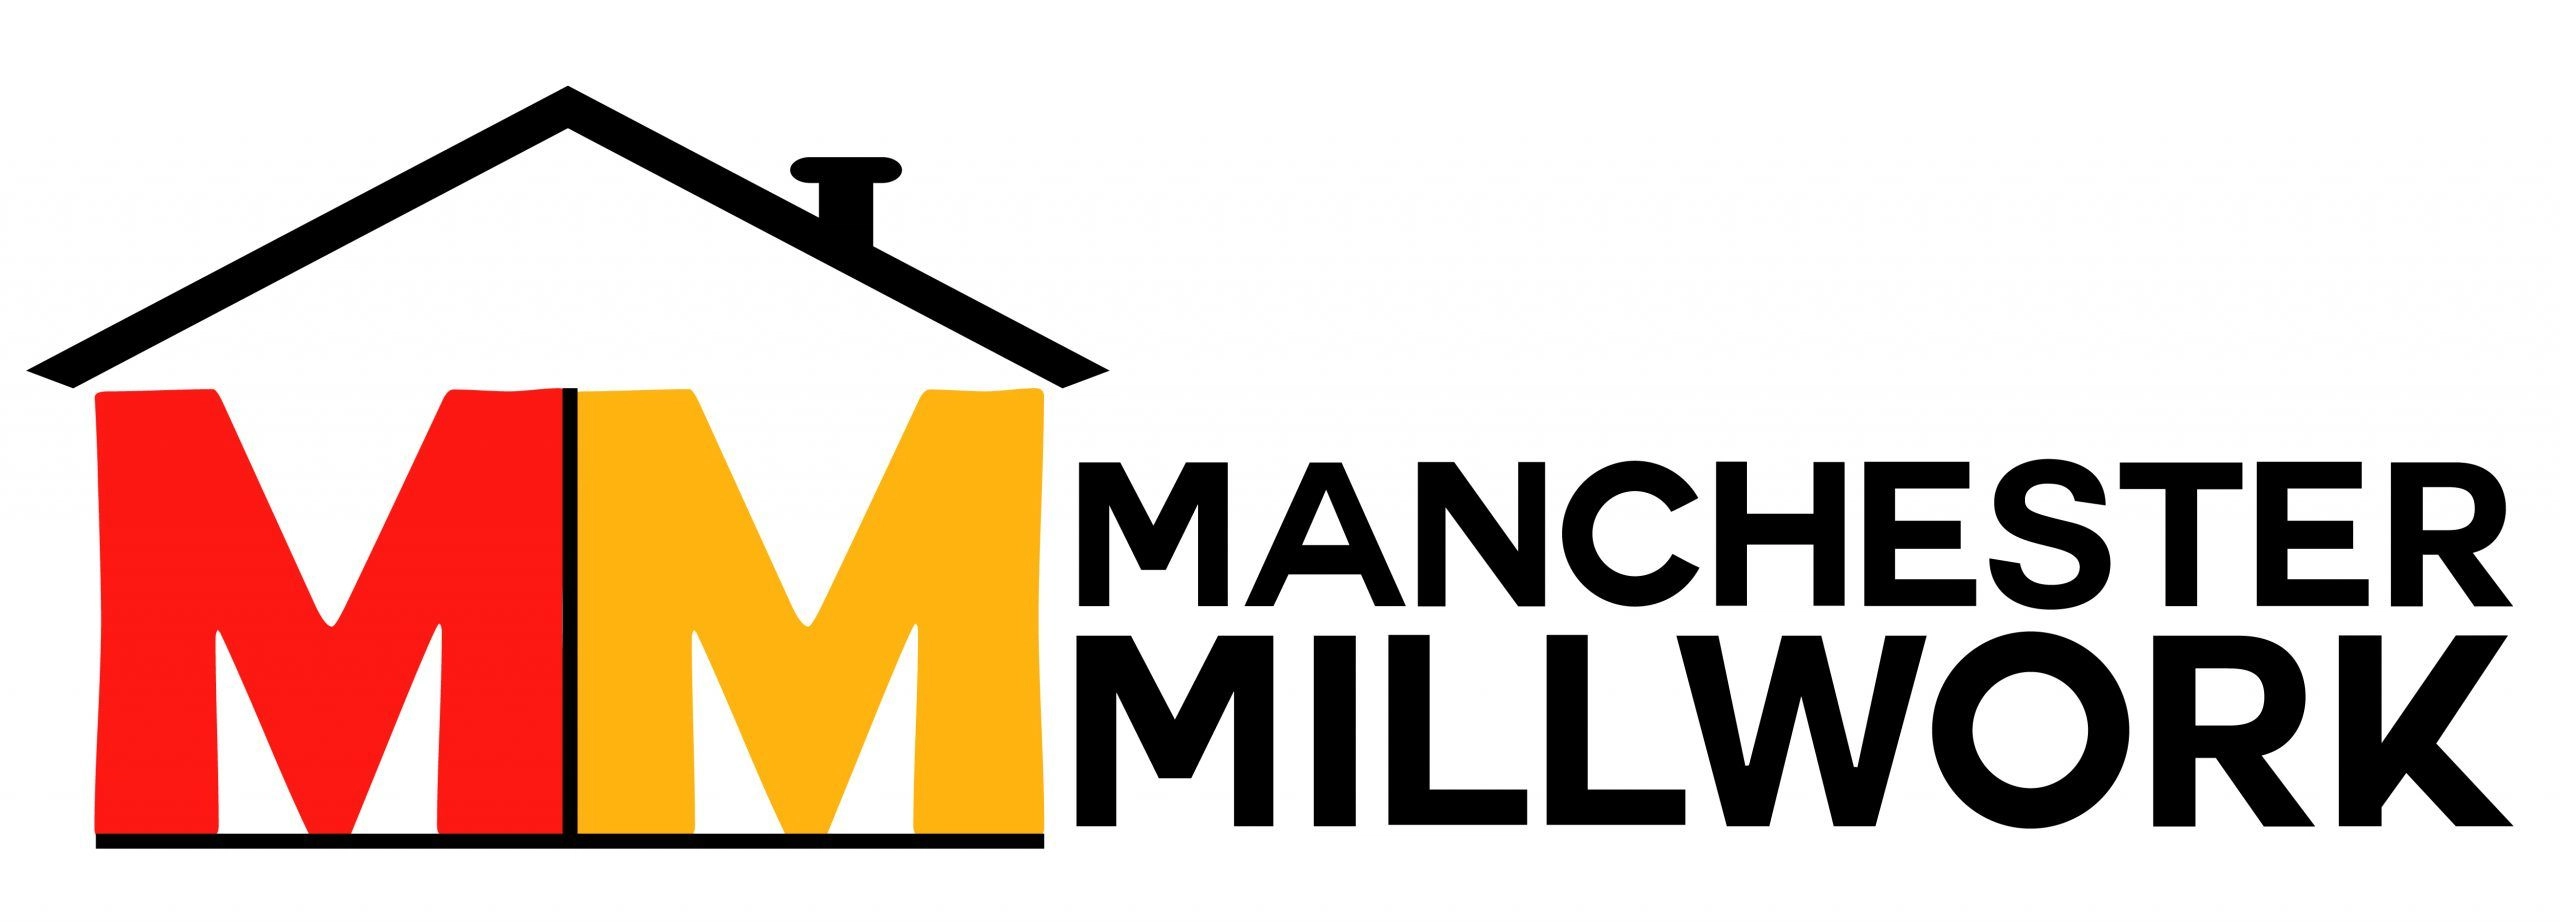 Manchester Millwork Logo